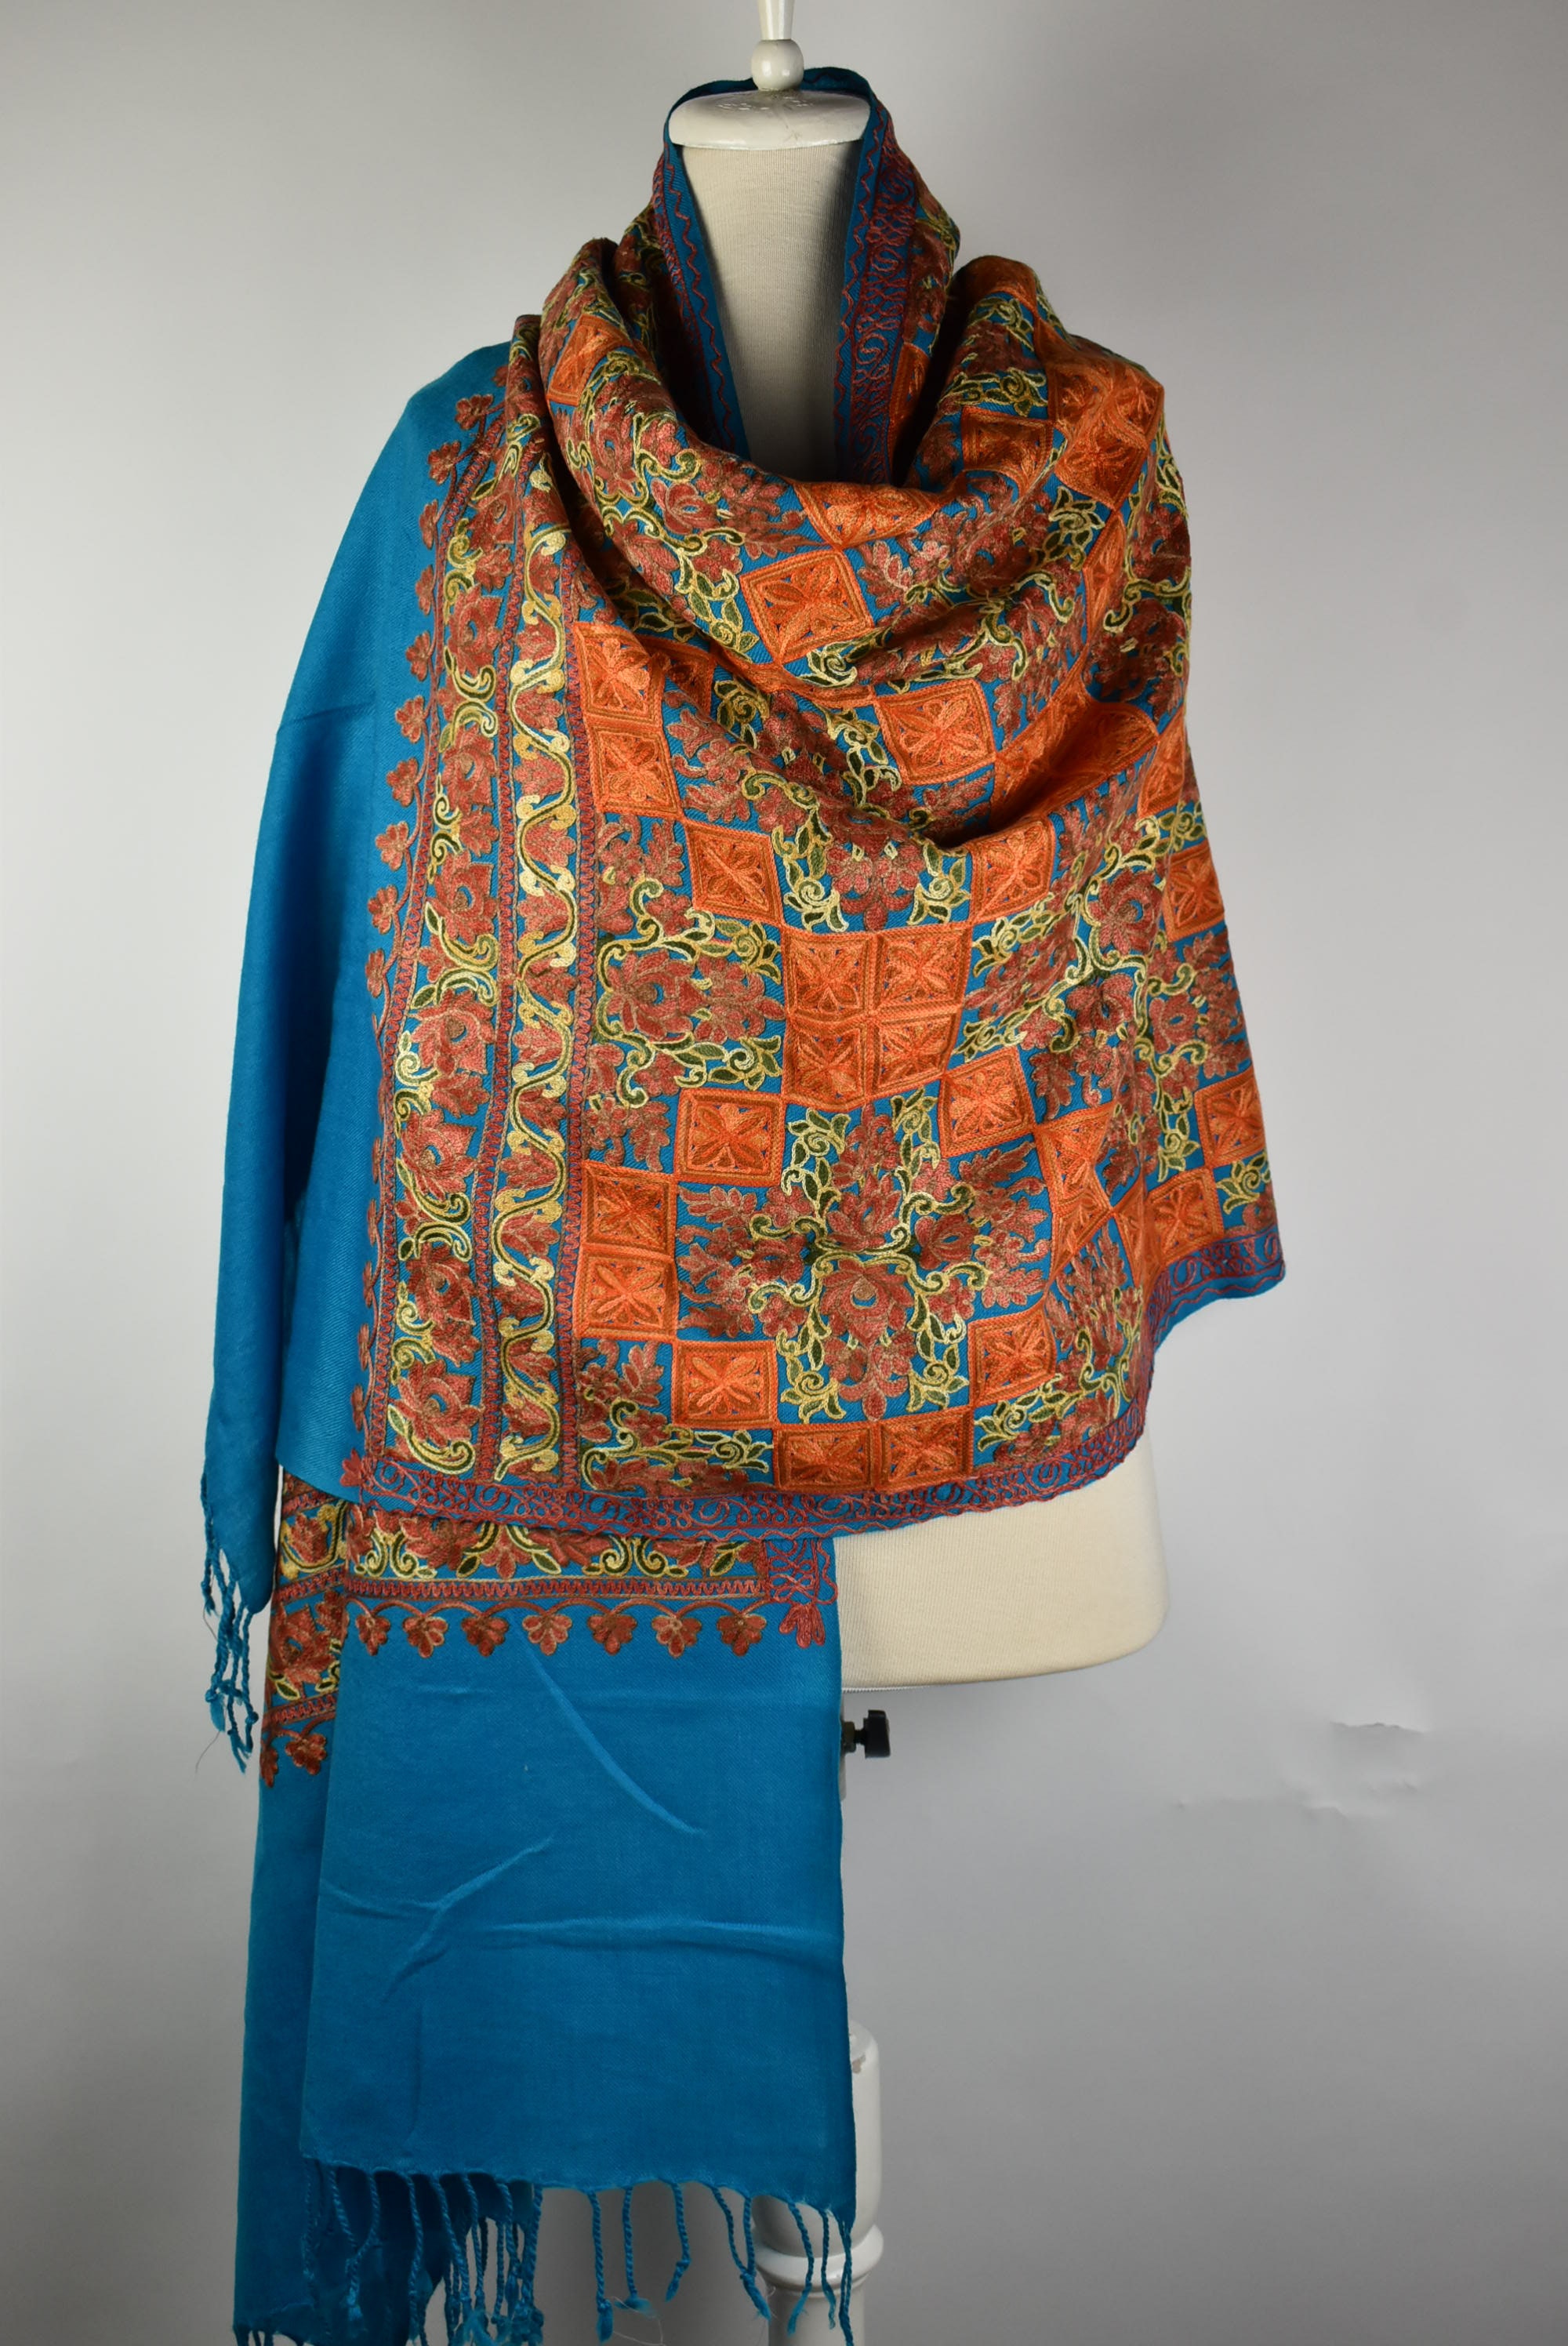 Wool Shawl Wrap Shawls and Wraps Embroidered Shawl Pashmina | Etsy